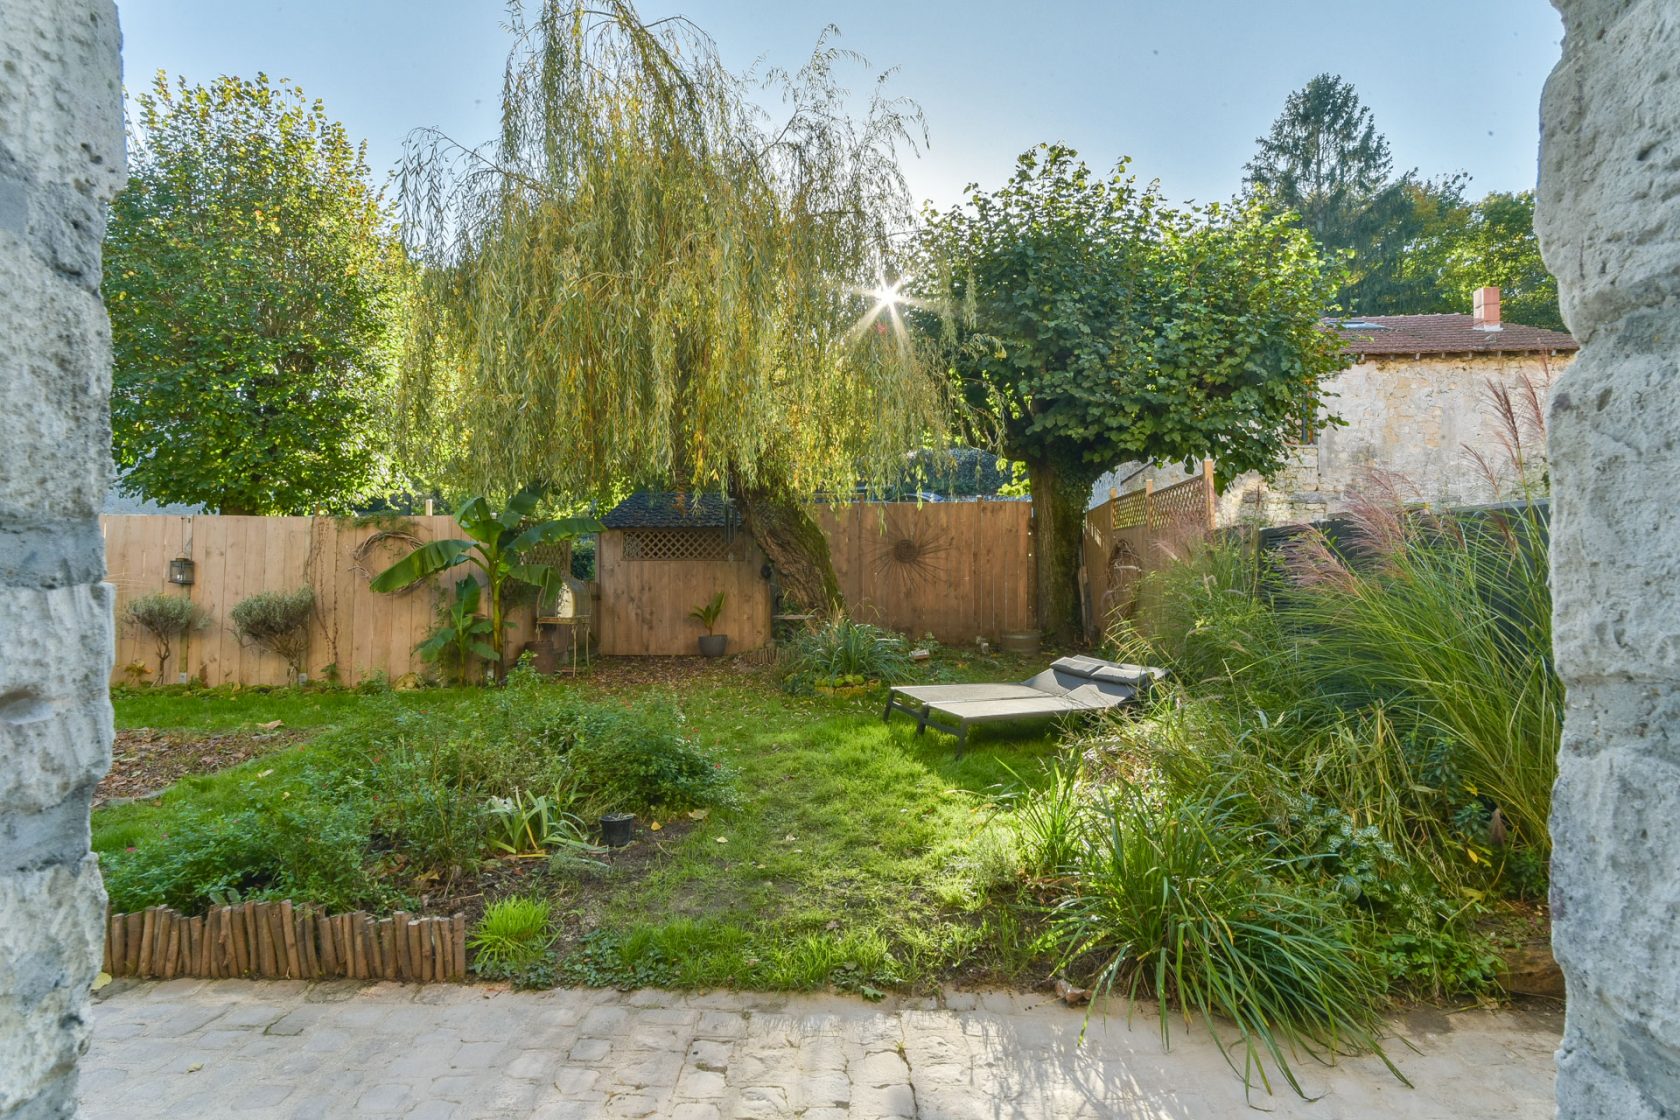 Le Joyau vert  – Appartement avec jardin privé dans un ancien relais de voyageurs.